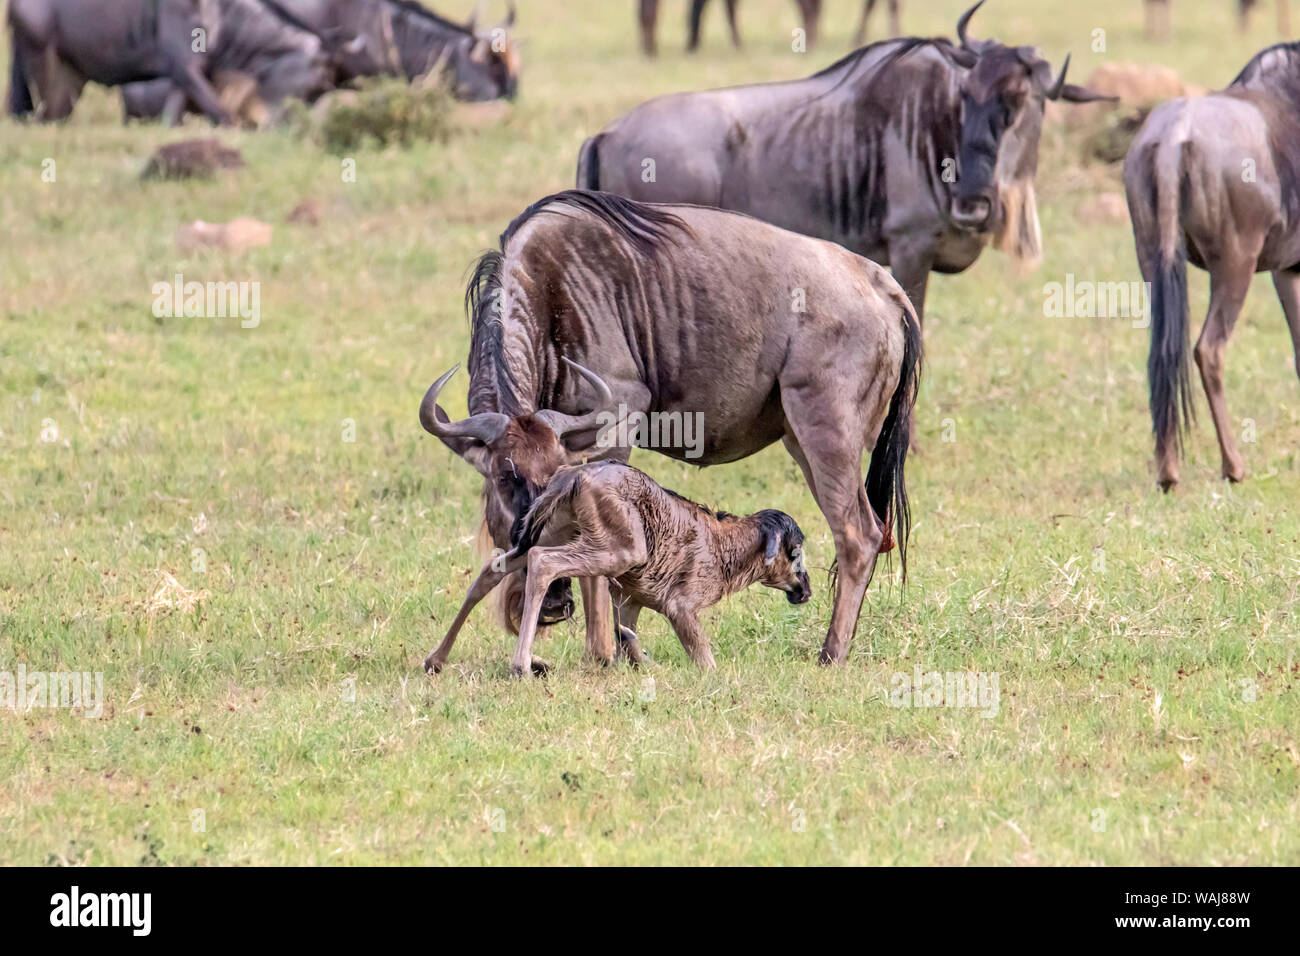 In Africa, la Tanzania, il cratere di Ngorongoro. Gnu (Connochaetes taurinus) madre e vitello sette minuti dopo la nascita. Vitello non può ancora stand. Foto Stock